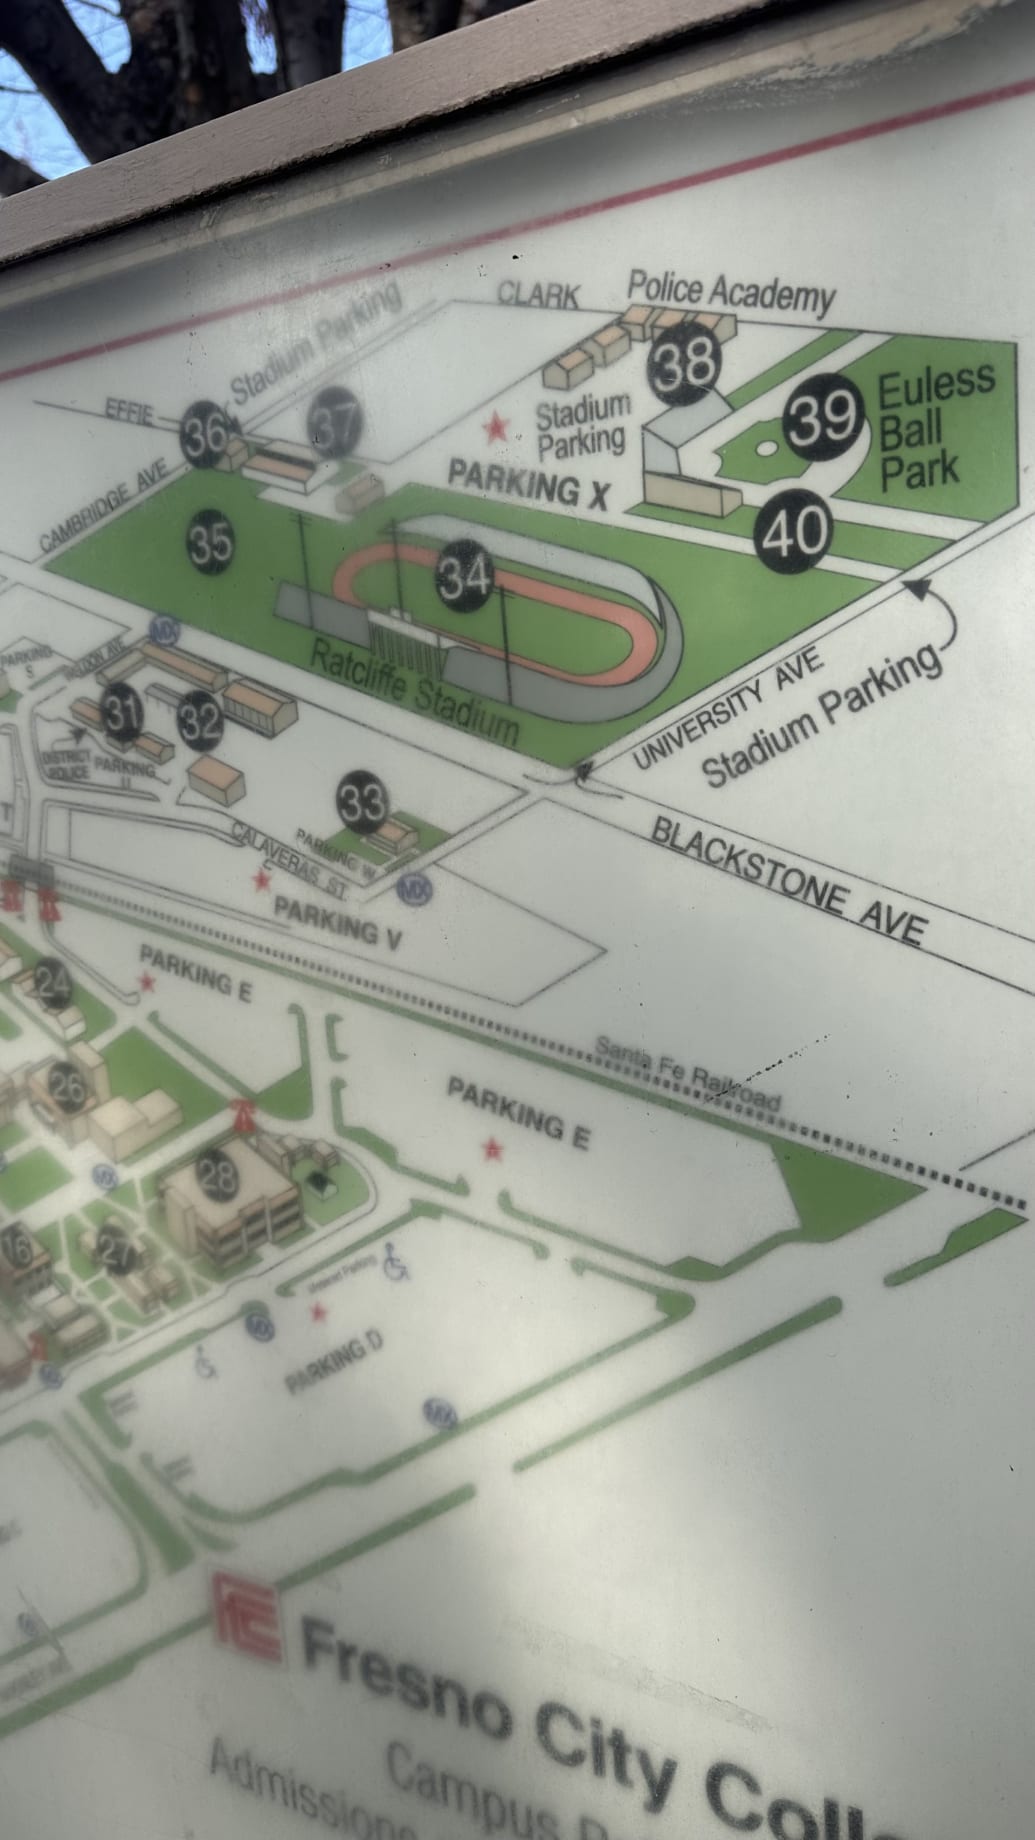 The John Euless Ballpark name still appears on maps.